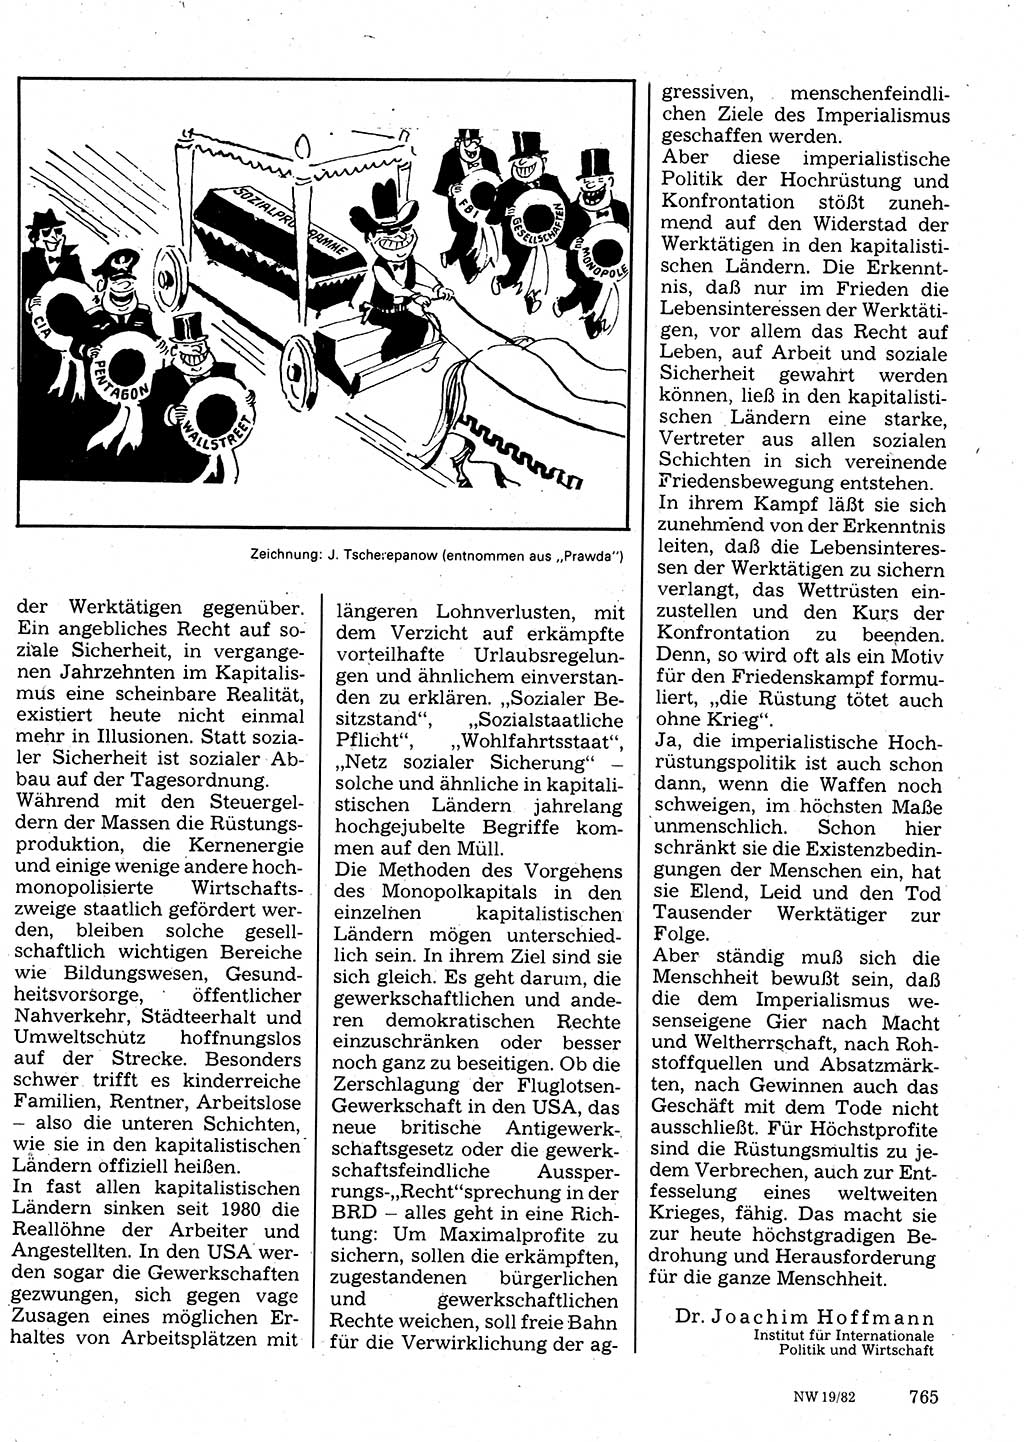 Neuer Weg (NW), Organ des Zentralkomitees (ZK) der SED (Sozialistische Einheitspartei Deutschlands) für Fragen des Parteilebens, 37. Jahrgang [Deutsche Demokratische Republik (DDR)] 1982, Seite 765 (NW ZK SED DDR 1982, S. 765)